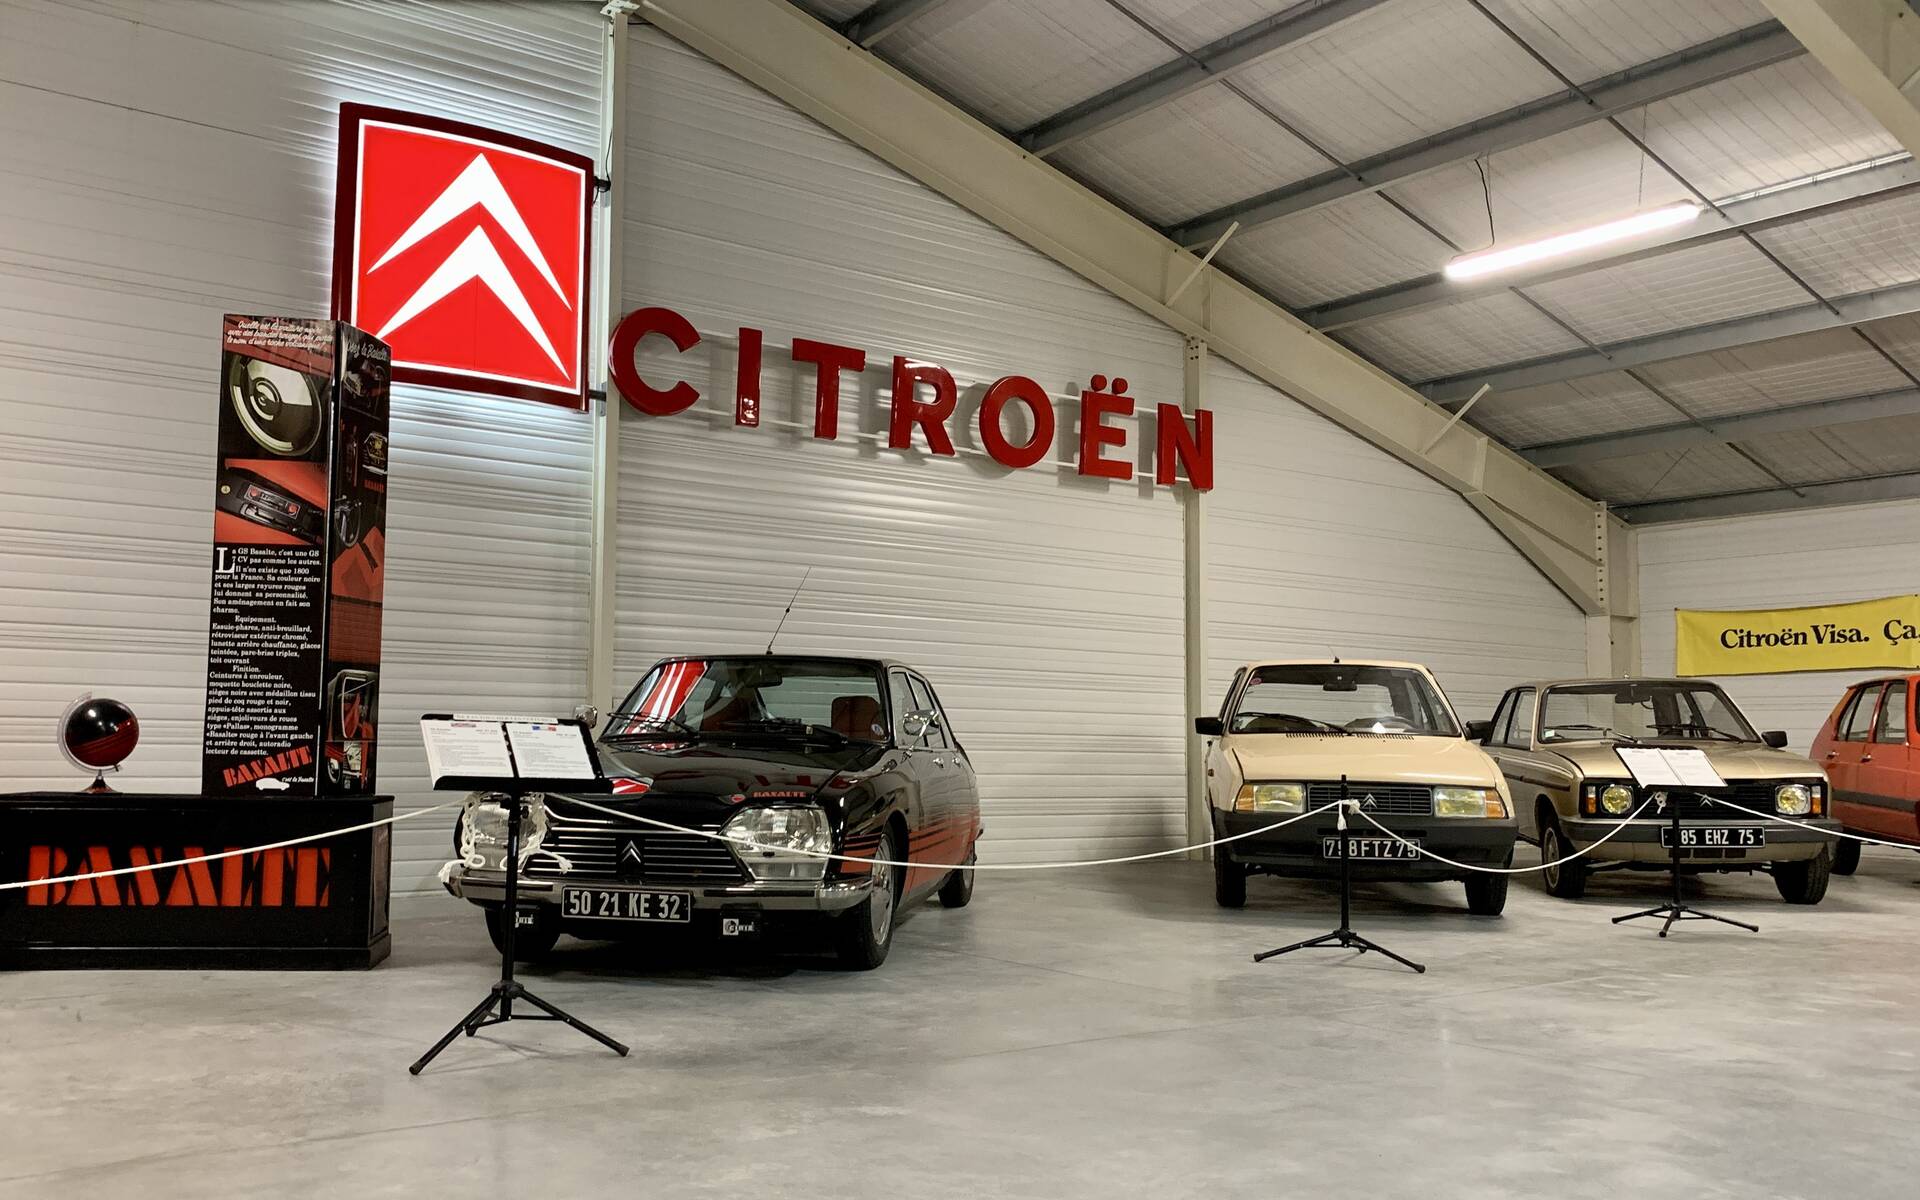 32 - Photos: plus de 100 Citroën d'exception réunies dans un musée en France 543102-photos-plus-de-100-citroen-d-exception-reunies-dans-un-musee-en-france